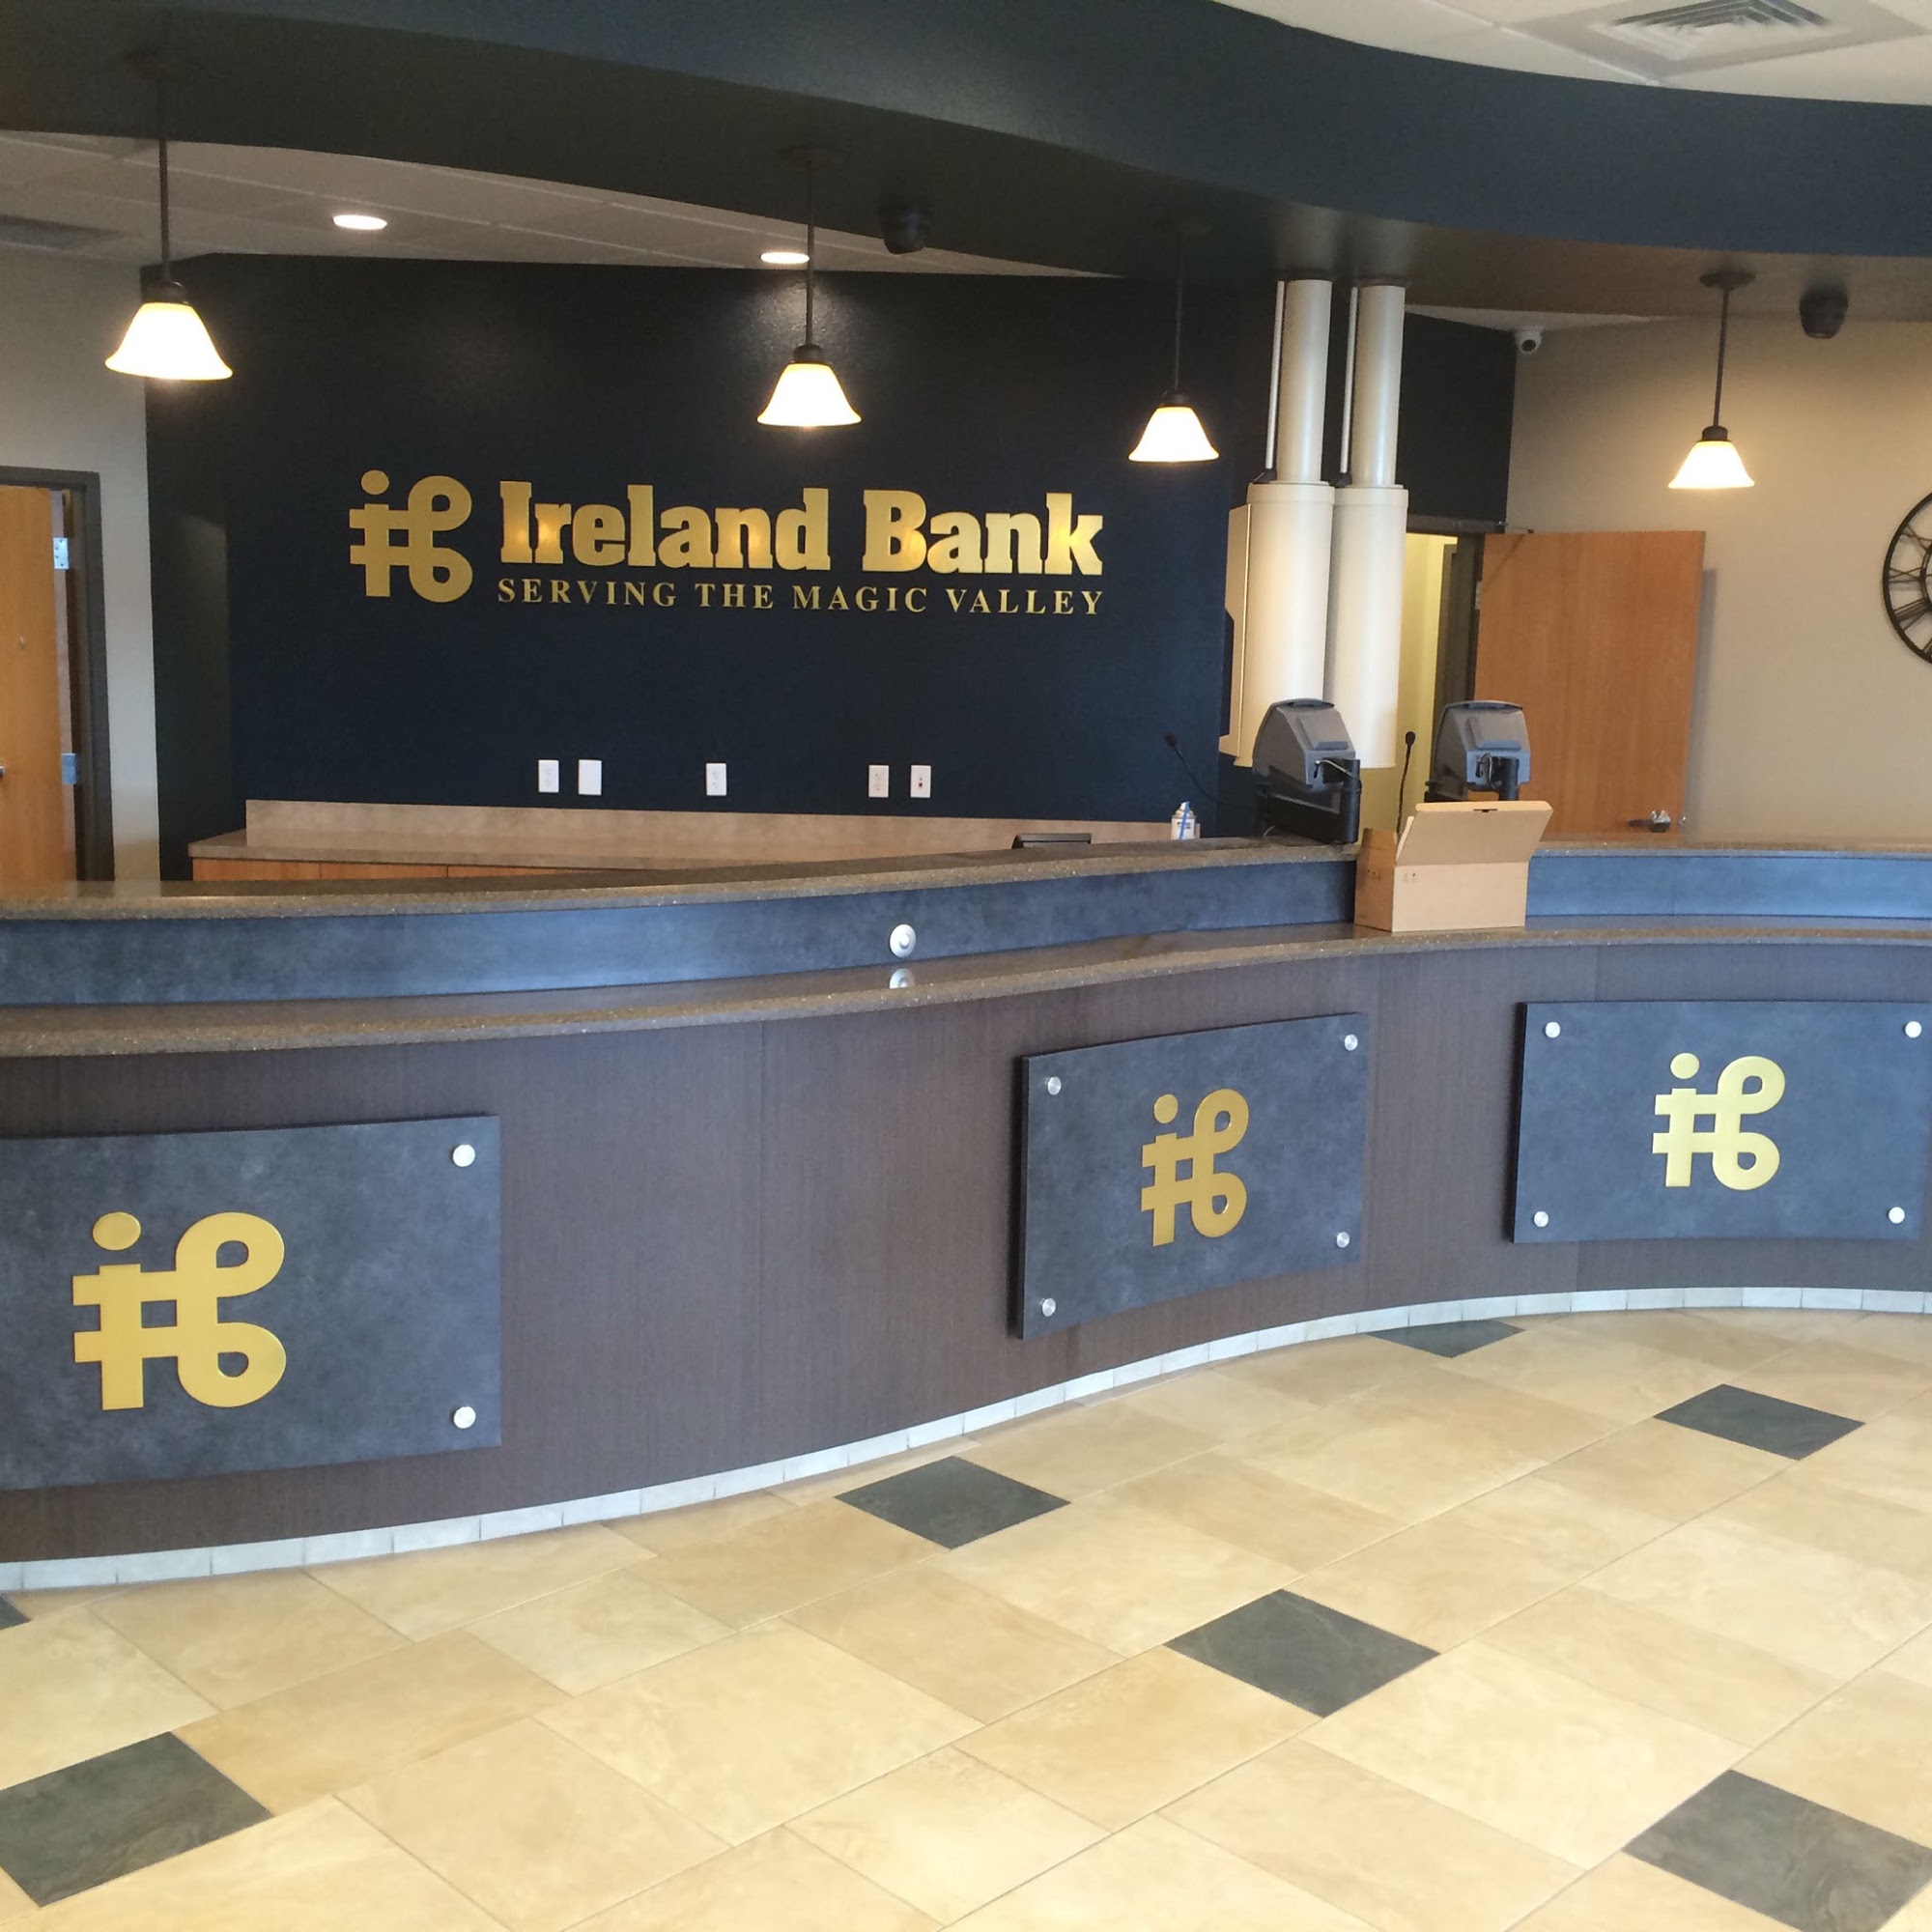 Ireland Bank